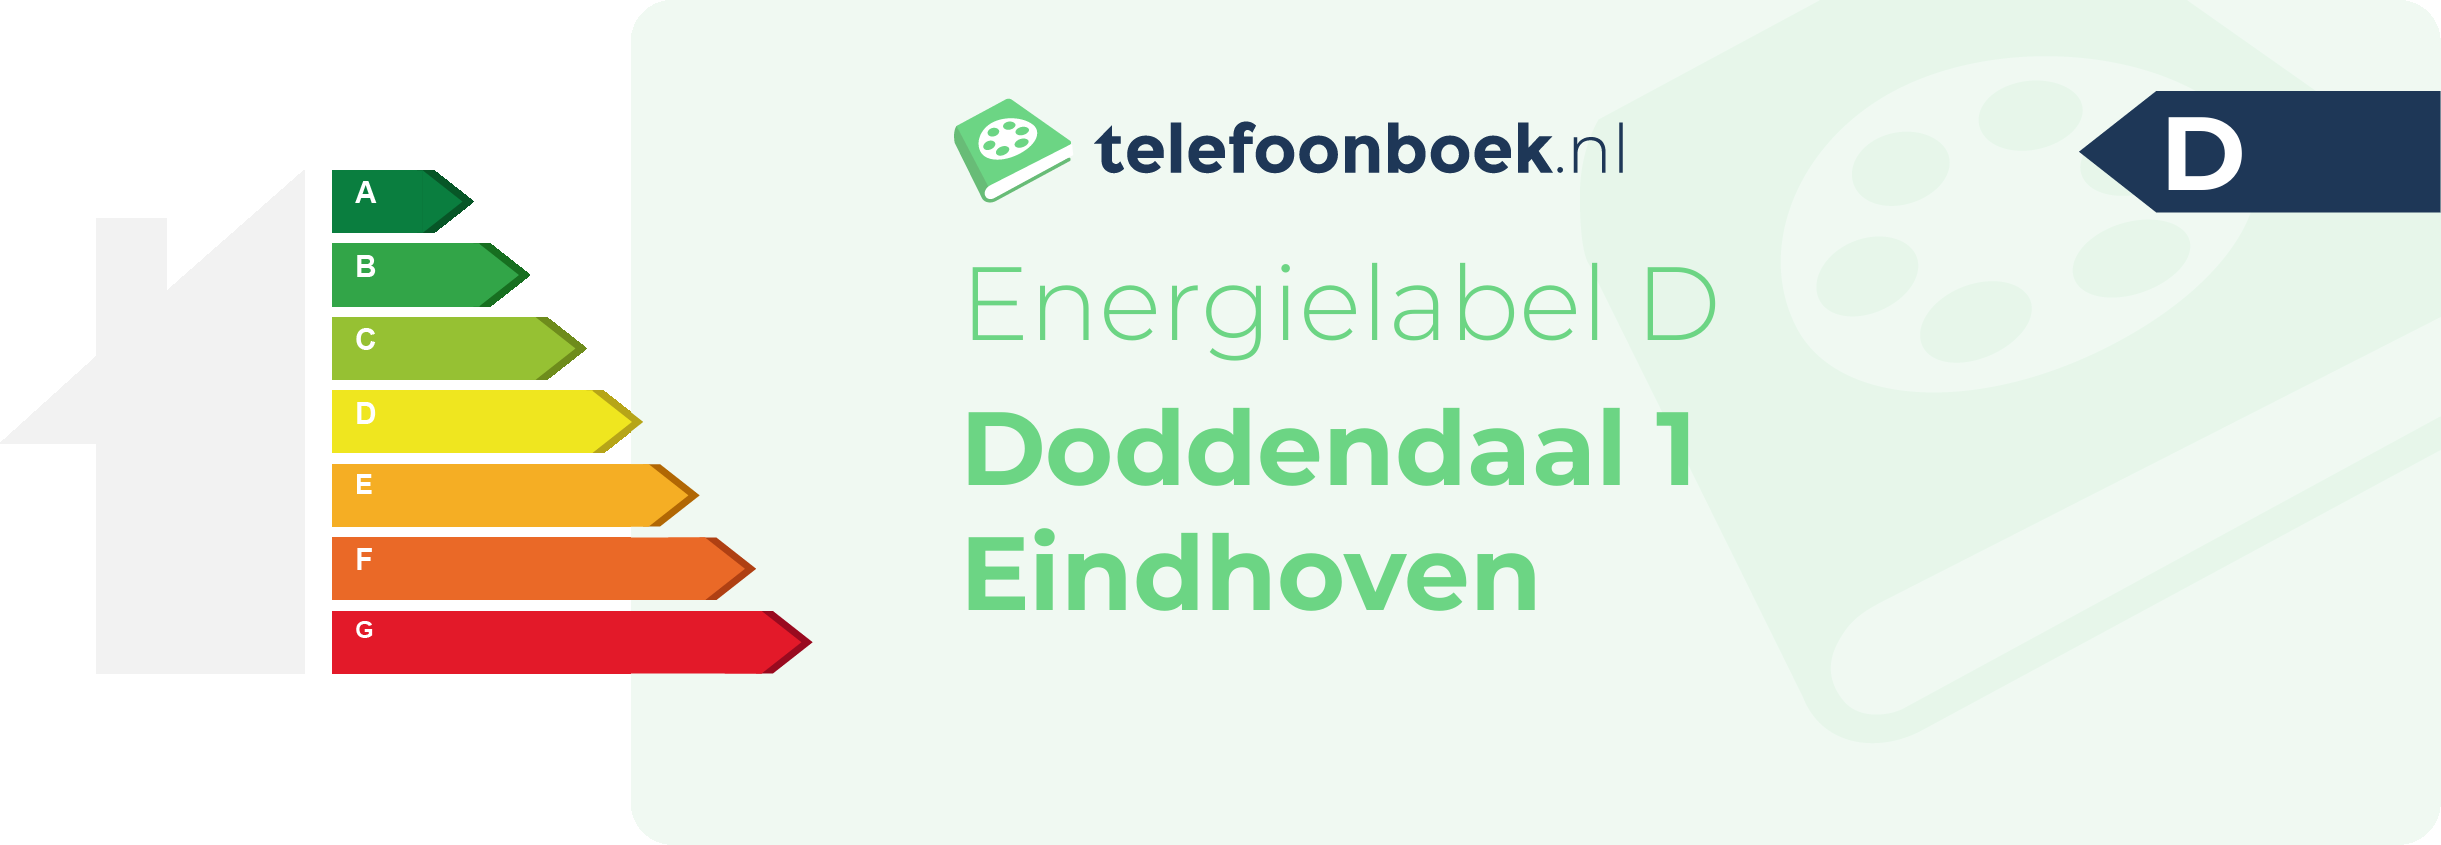 Energielabel Doddendaal 1 Eindhoven